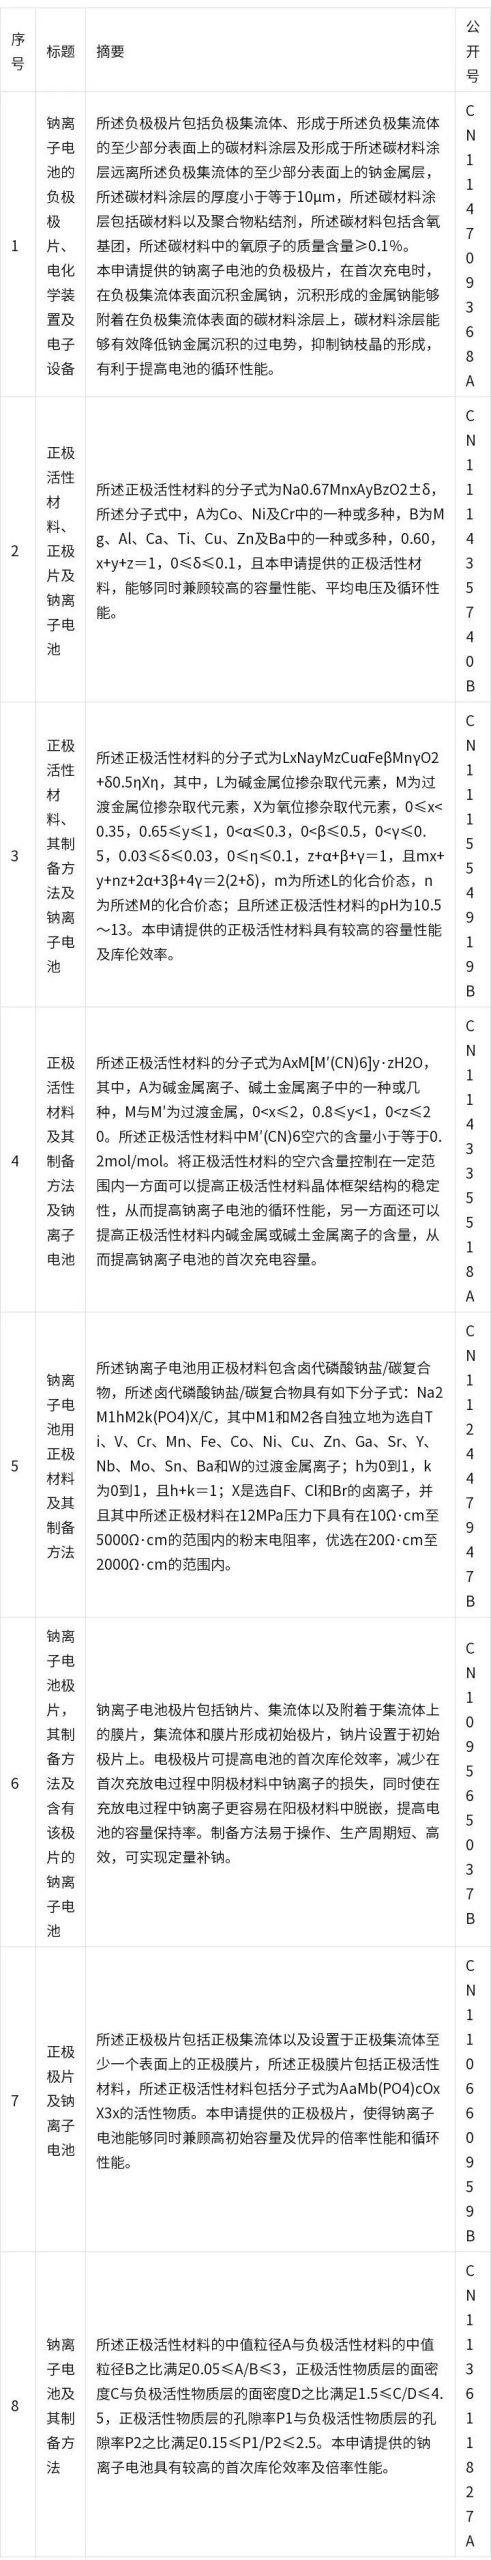 中国钠离子电池发明专利概况，宁德时代排名第一！